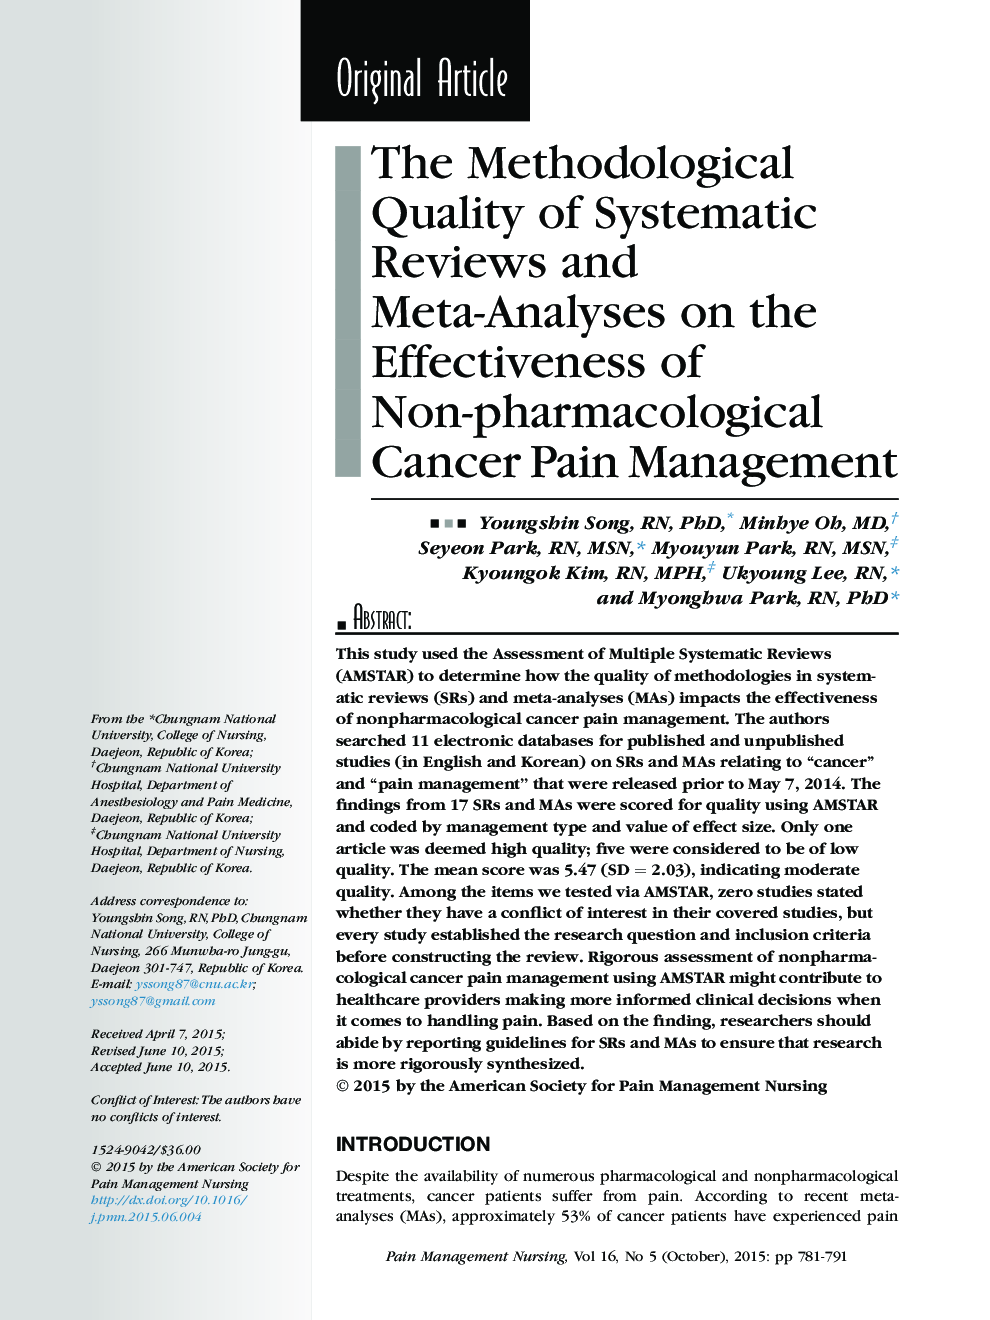 کیفیت روش شناختی بررسی و متاآنالیز سیستماتیک بر روی اثربخشی مدیریت غیردارویی درد سرطان 